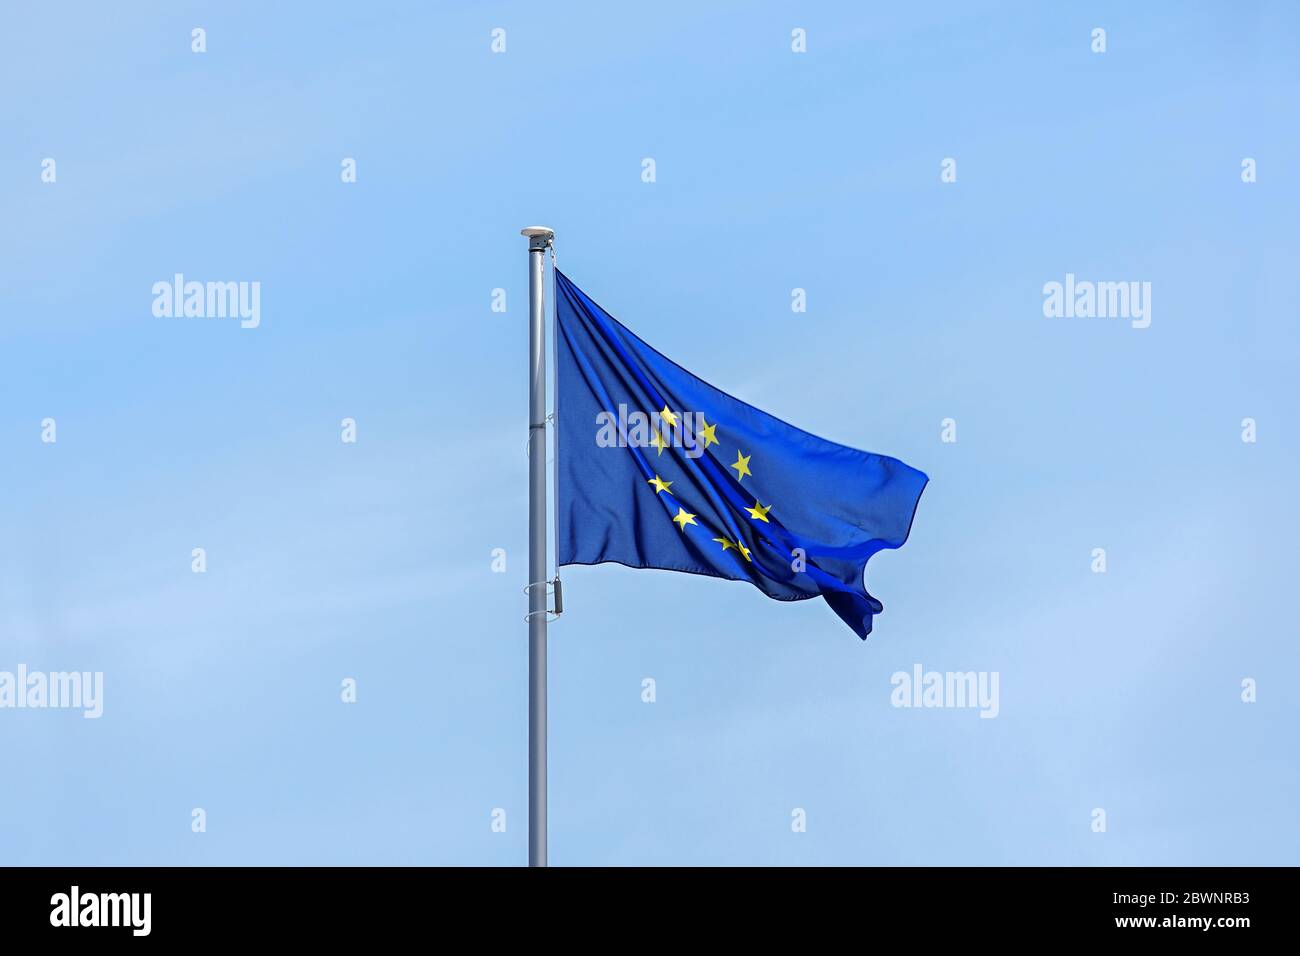 Cờ châu Âu với ngôi sao vàng cho mỗi thành viên trên nền xanh là một tác phẩm thiết kế đẹp mắt và đầy tình cảm. Nếu bạn muốn tìm hiểu về sự đoàn kết, sự phát triển và tinh thần châu Âu, hãy xem hình ảnh của cờ châu Âu.